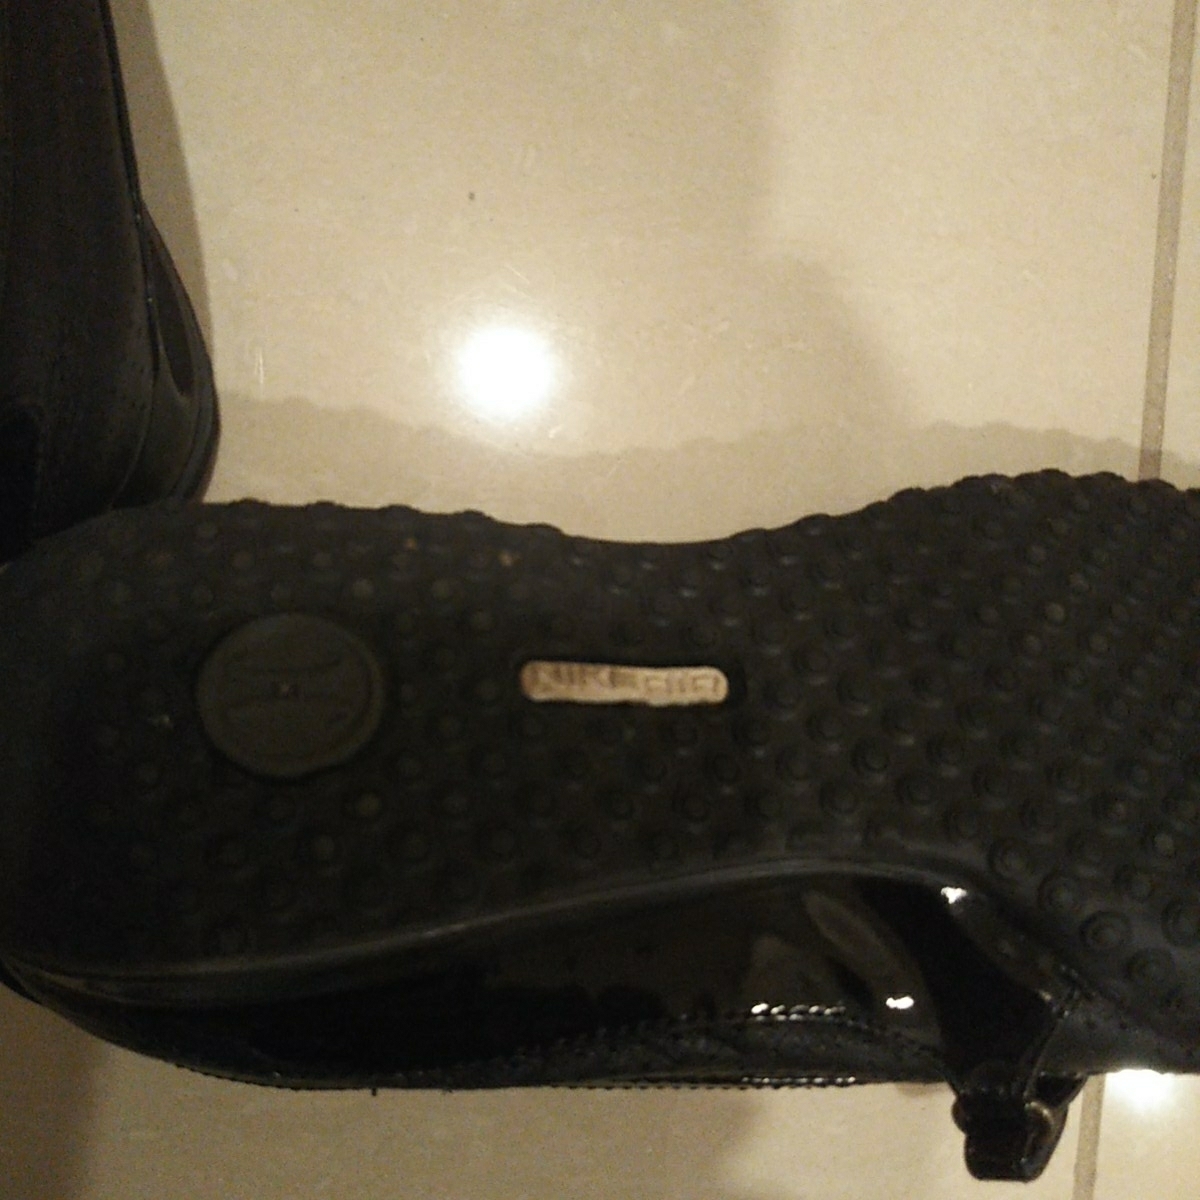  обувь low fa call рукоятка × Nike воздушный легкий чёрный цвет эмаль перфорирование резина низ скользить . нет . ощущение хороший . текстильная застёжка размер 7B 24. ранг прекрасный товар 